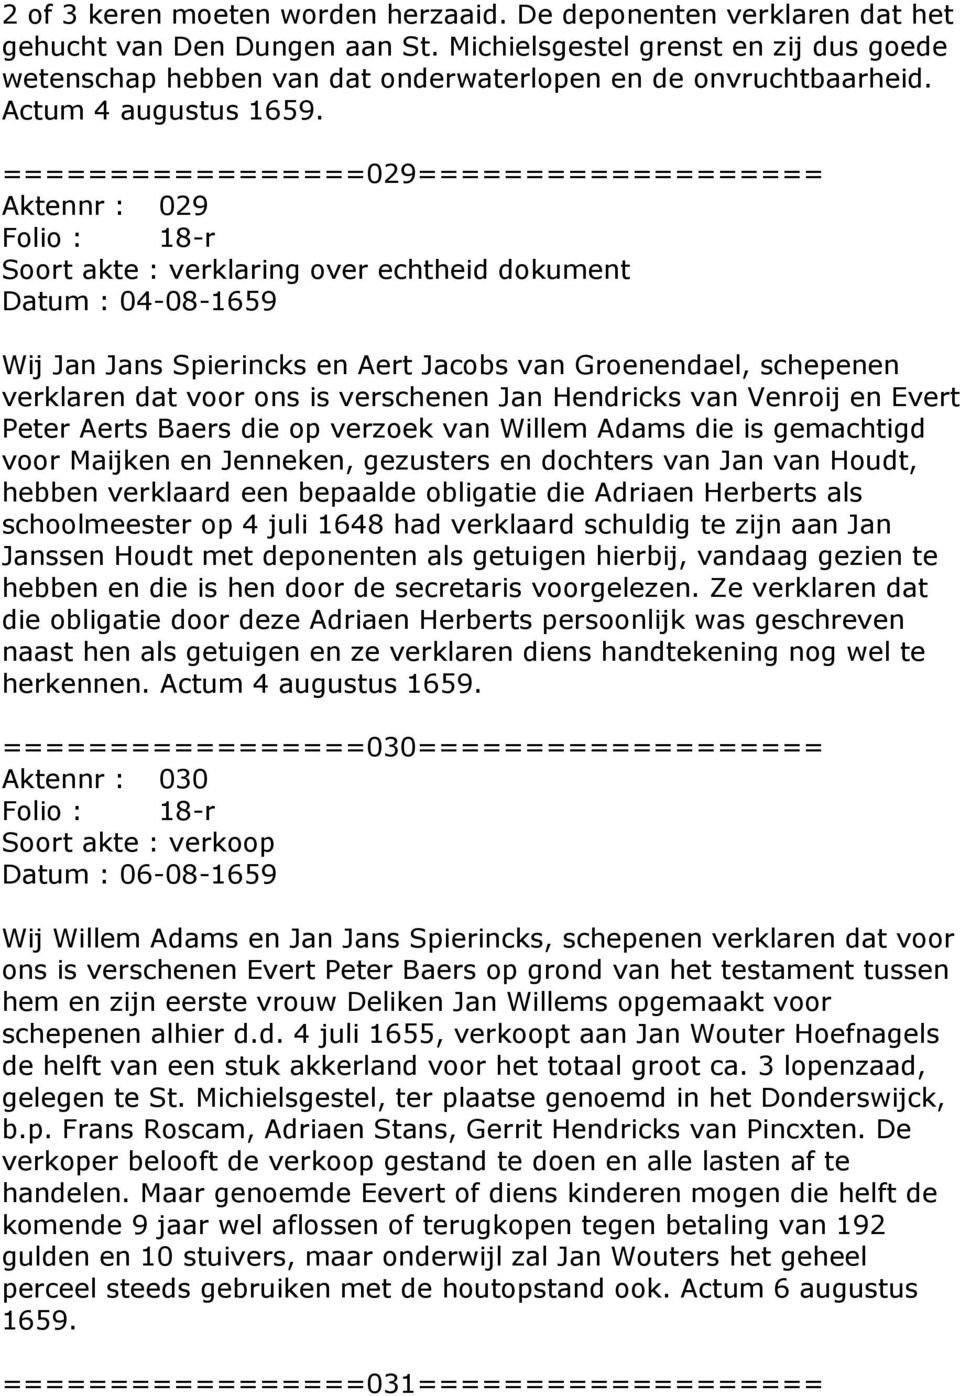 =================029=================== Aktennr : 029 Folio : 18-r Soort akte : verklaring over echtheid dokument Datum : 04-08-1659 Wij Jan Jans Spierincks en Aert Jacobs van Groenendael, schepenen